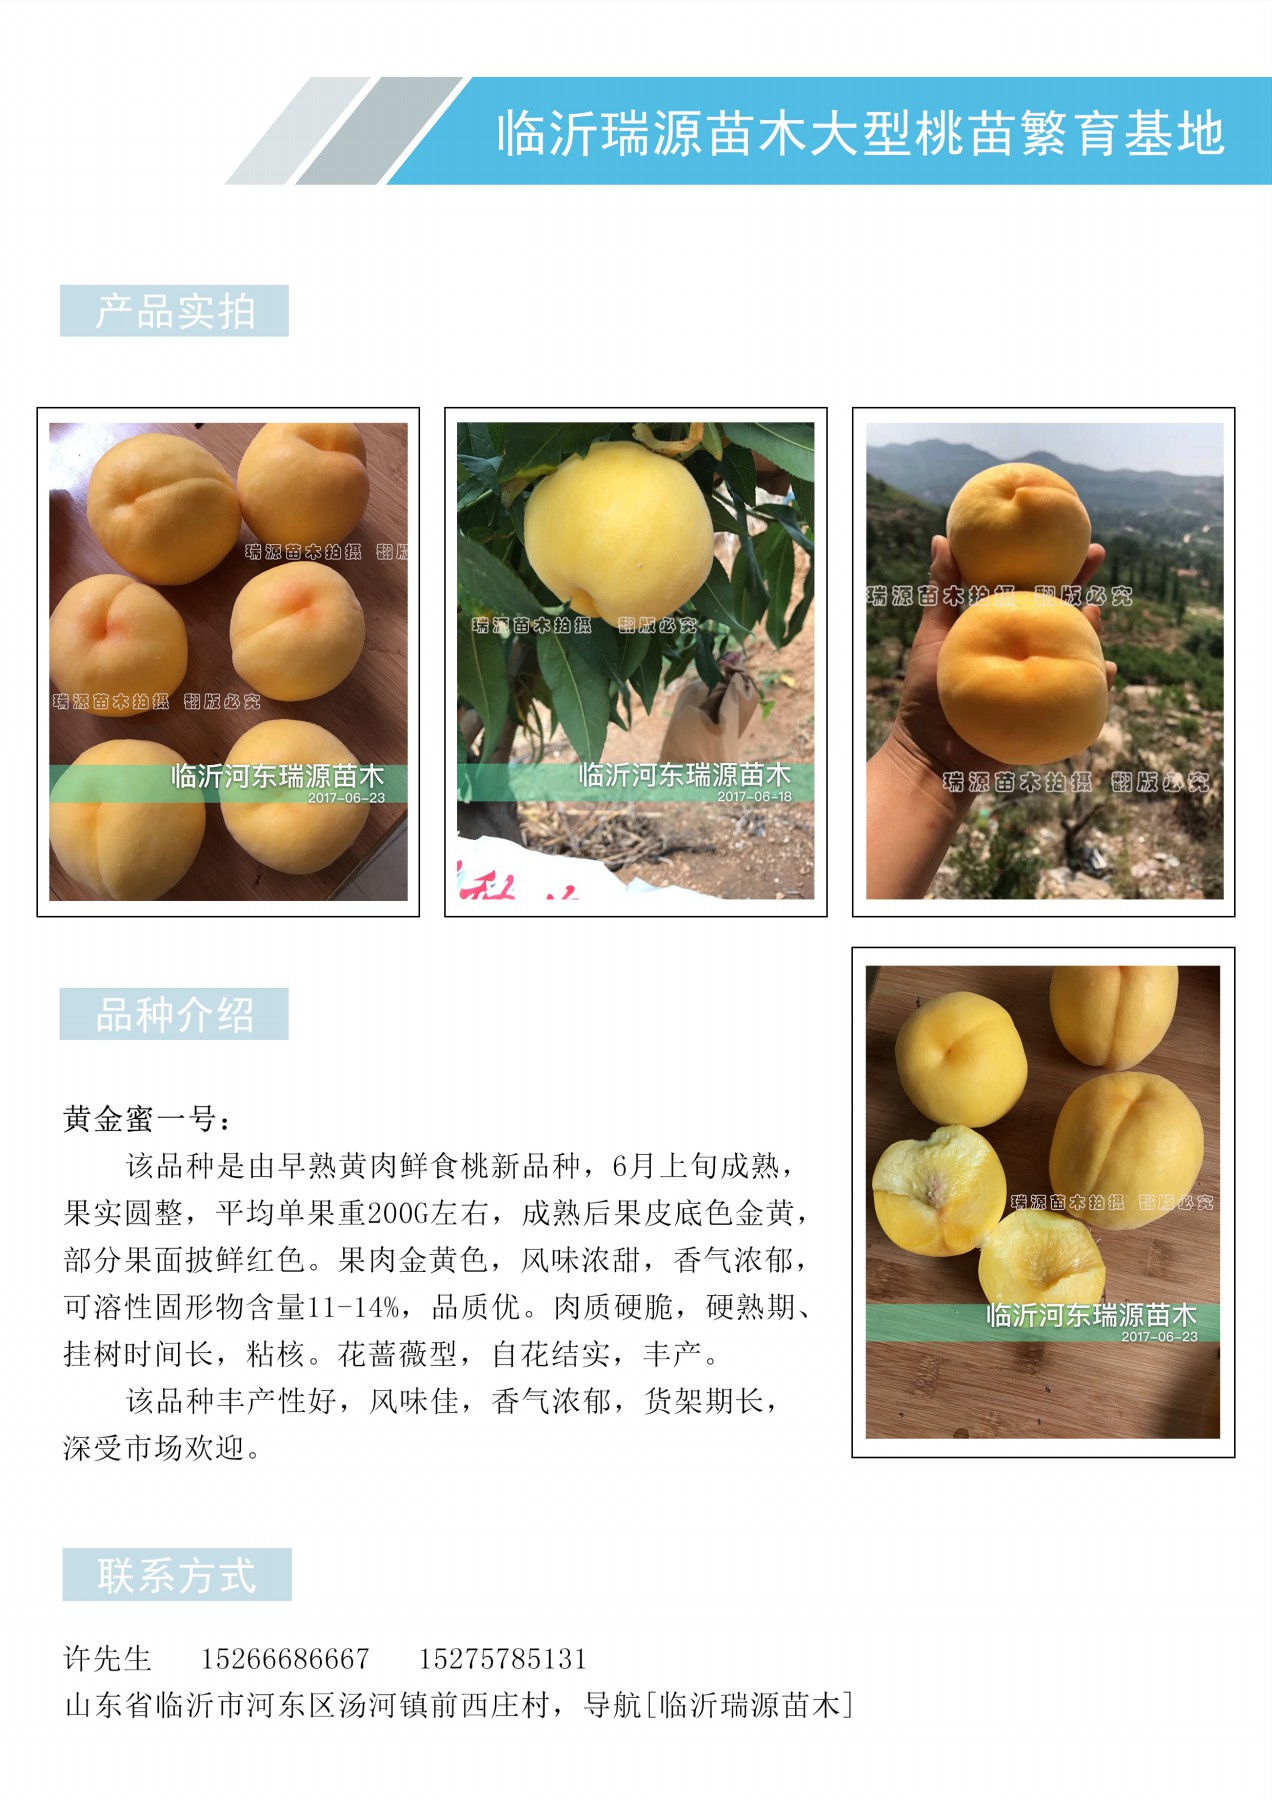 桃树的品种有哪些及特性_桃树的品种有哪些及特性介绍简介